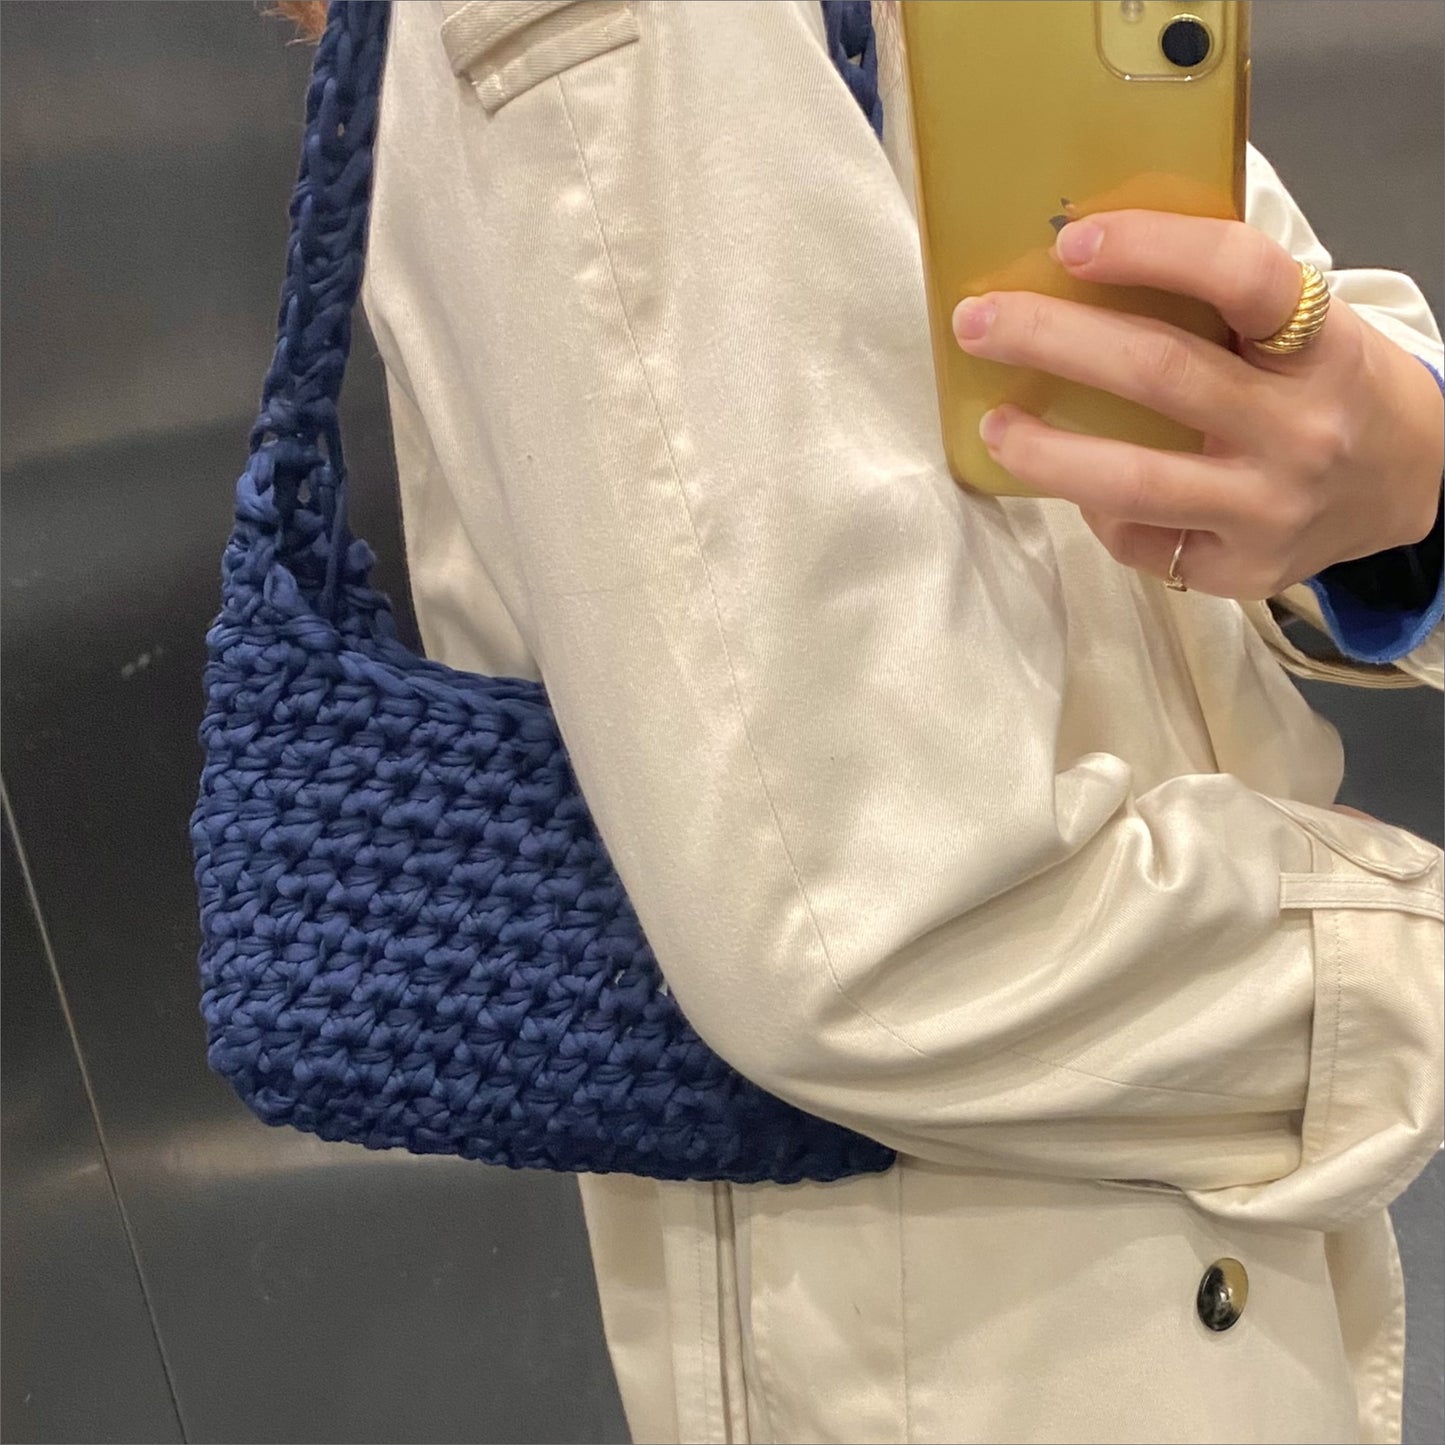 Simple and chunky dark blue navy crochet mini bag